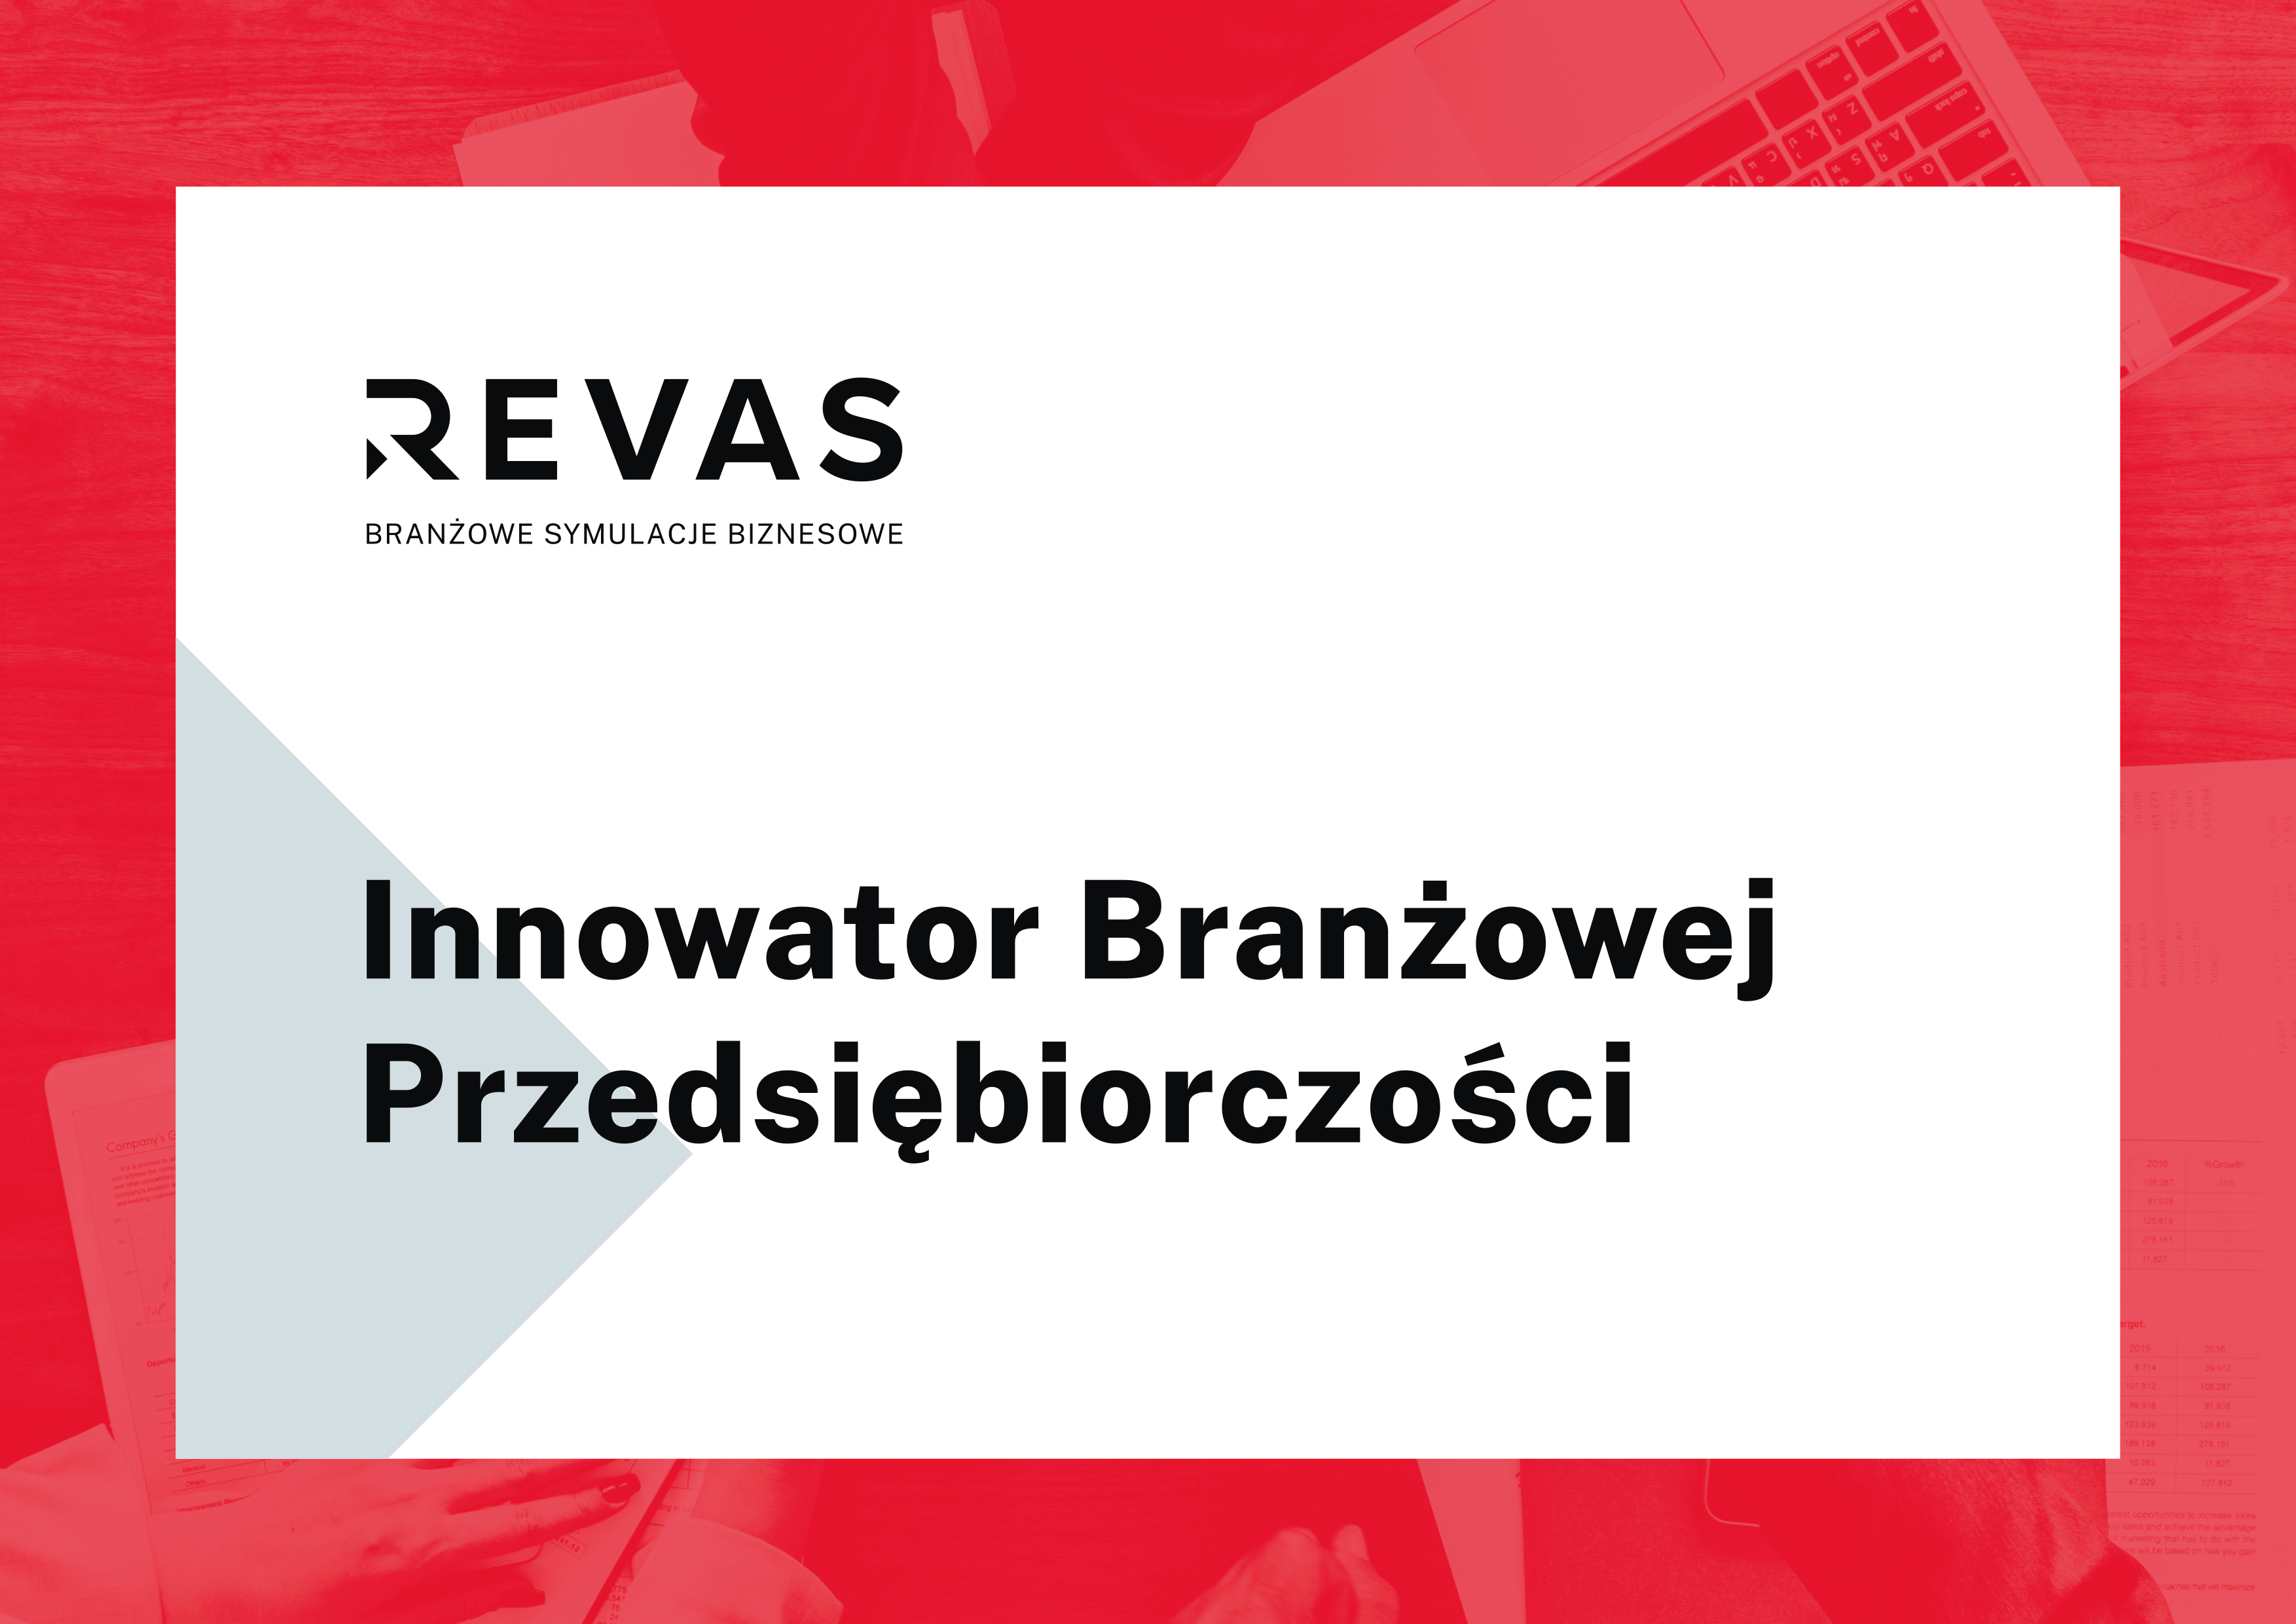 Innowator Branzowej Przedsibiorczoci Revas